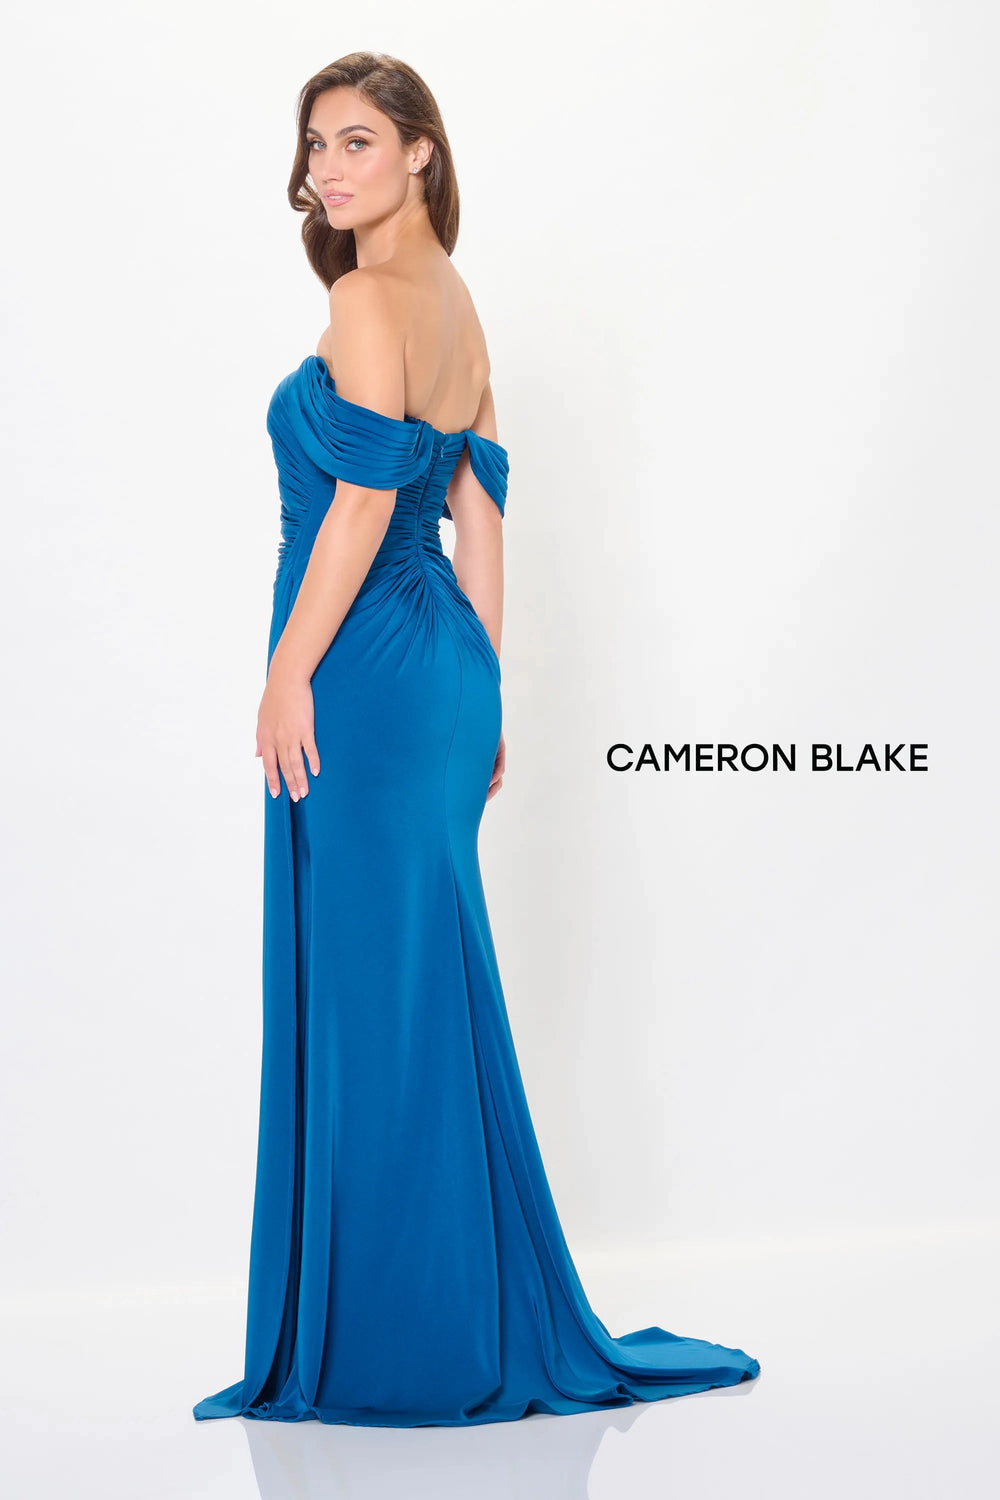 Mon Cheri Cameron Blake Dress Mon Cheri Cameron Blake CB3241 Dress